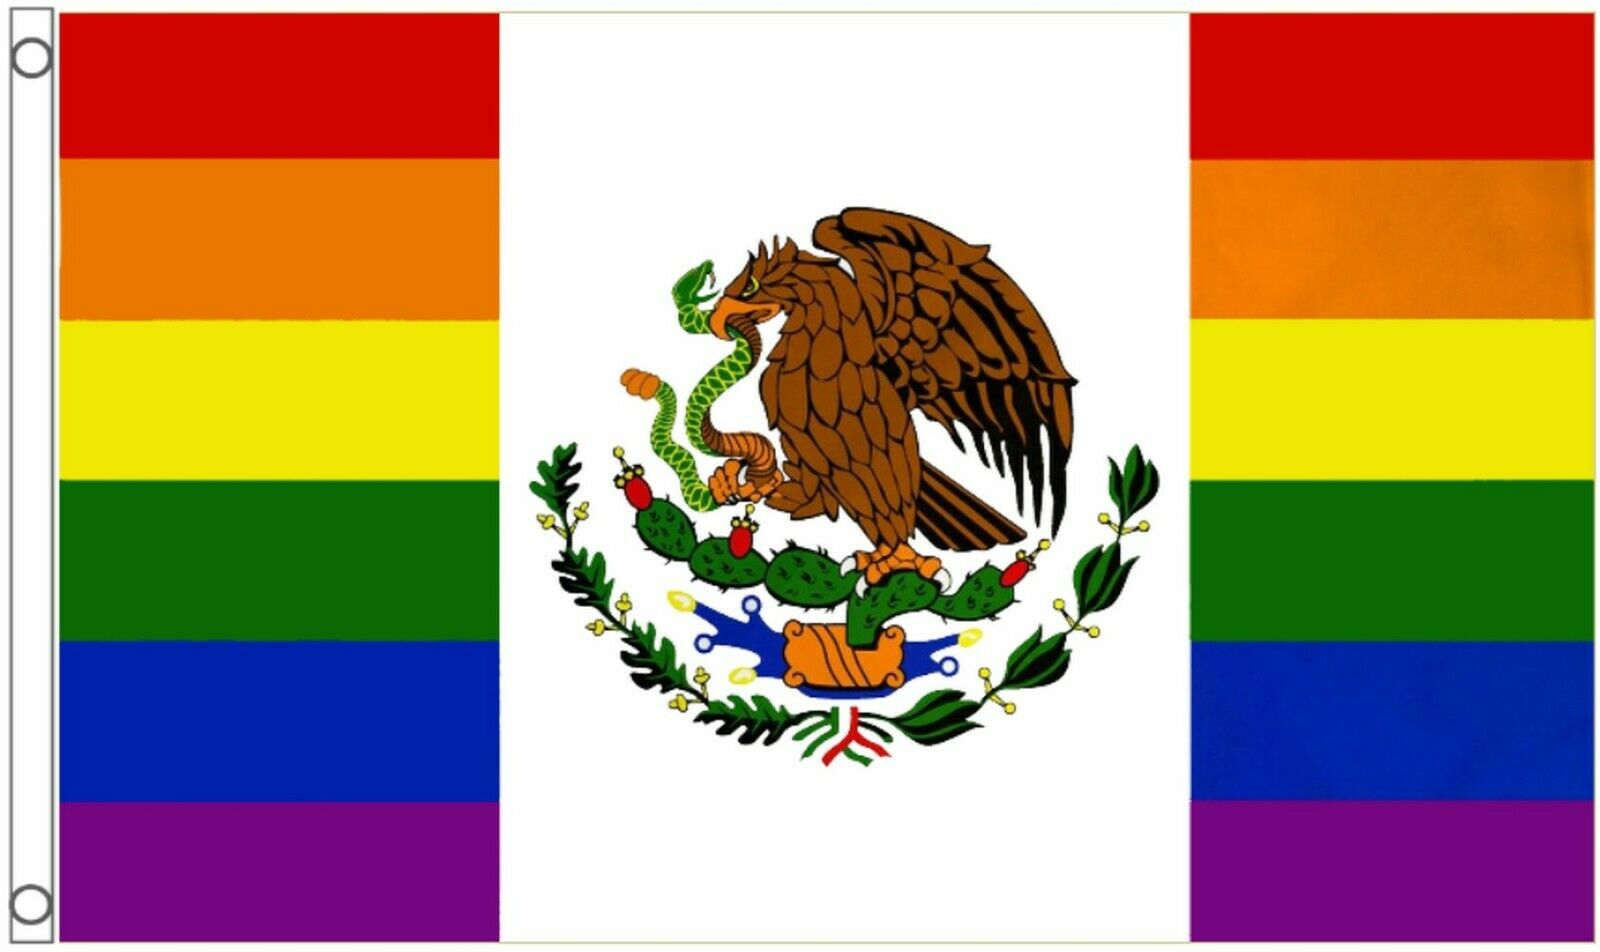 Mexico Rainbow Lgbtq+ Gay Pride 5'x3' Flag